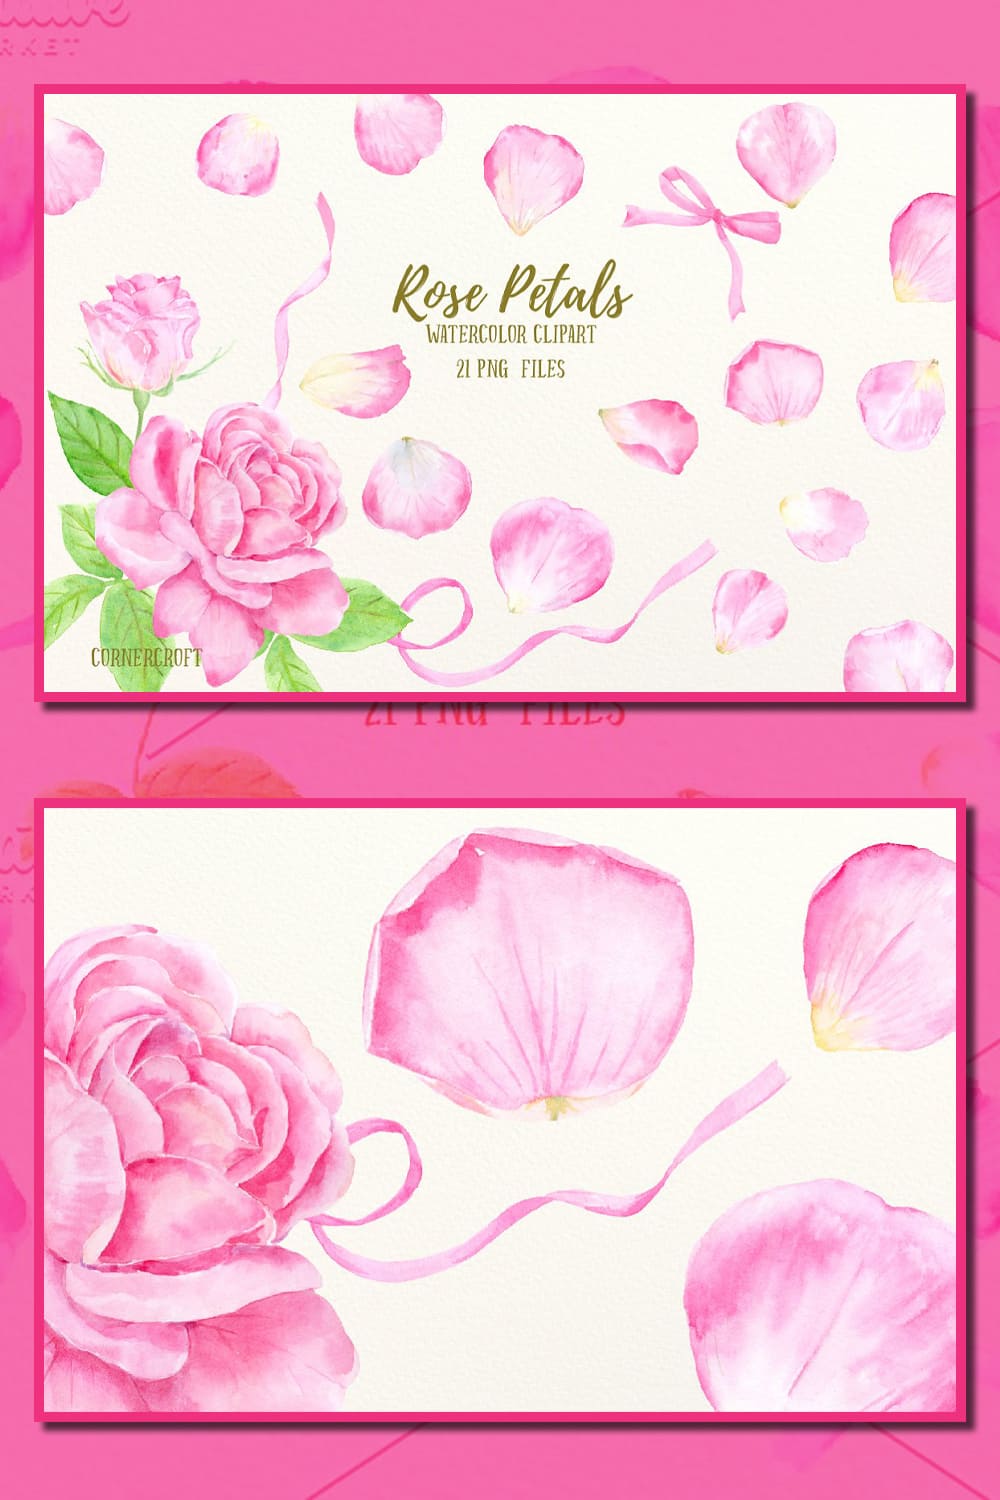 Watercolor Pink Rose Petals Clip Art.